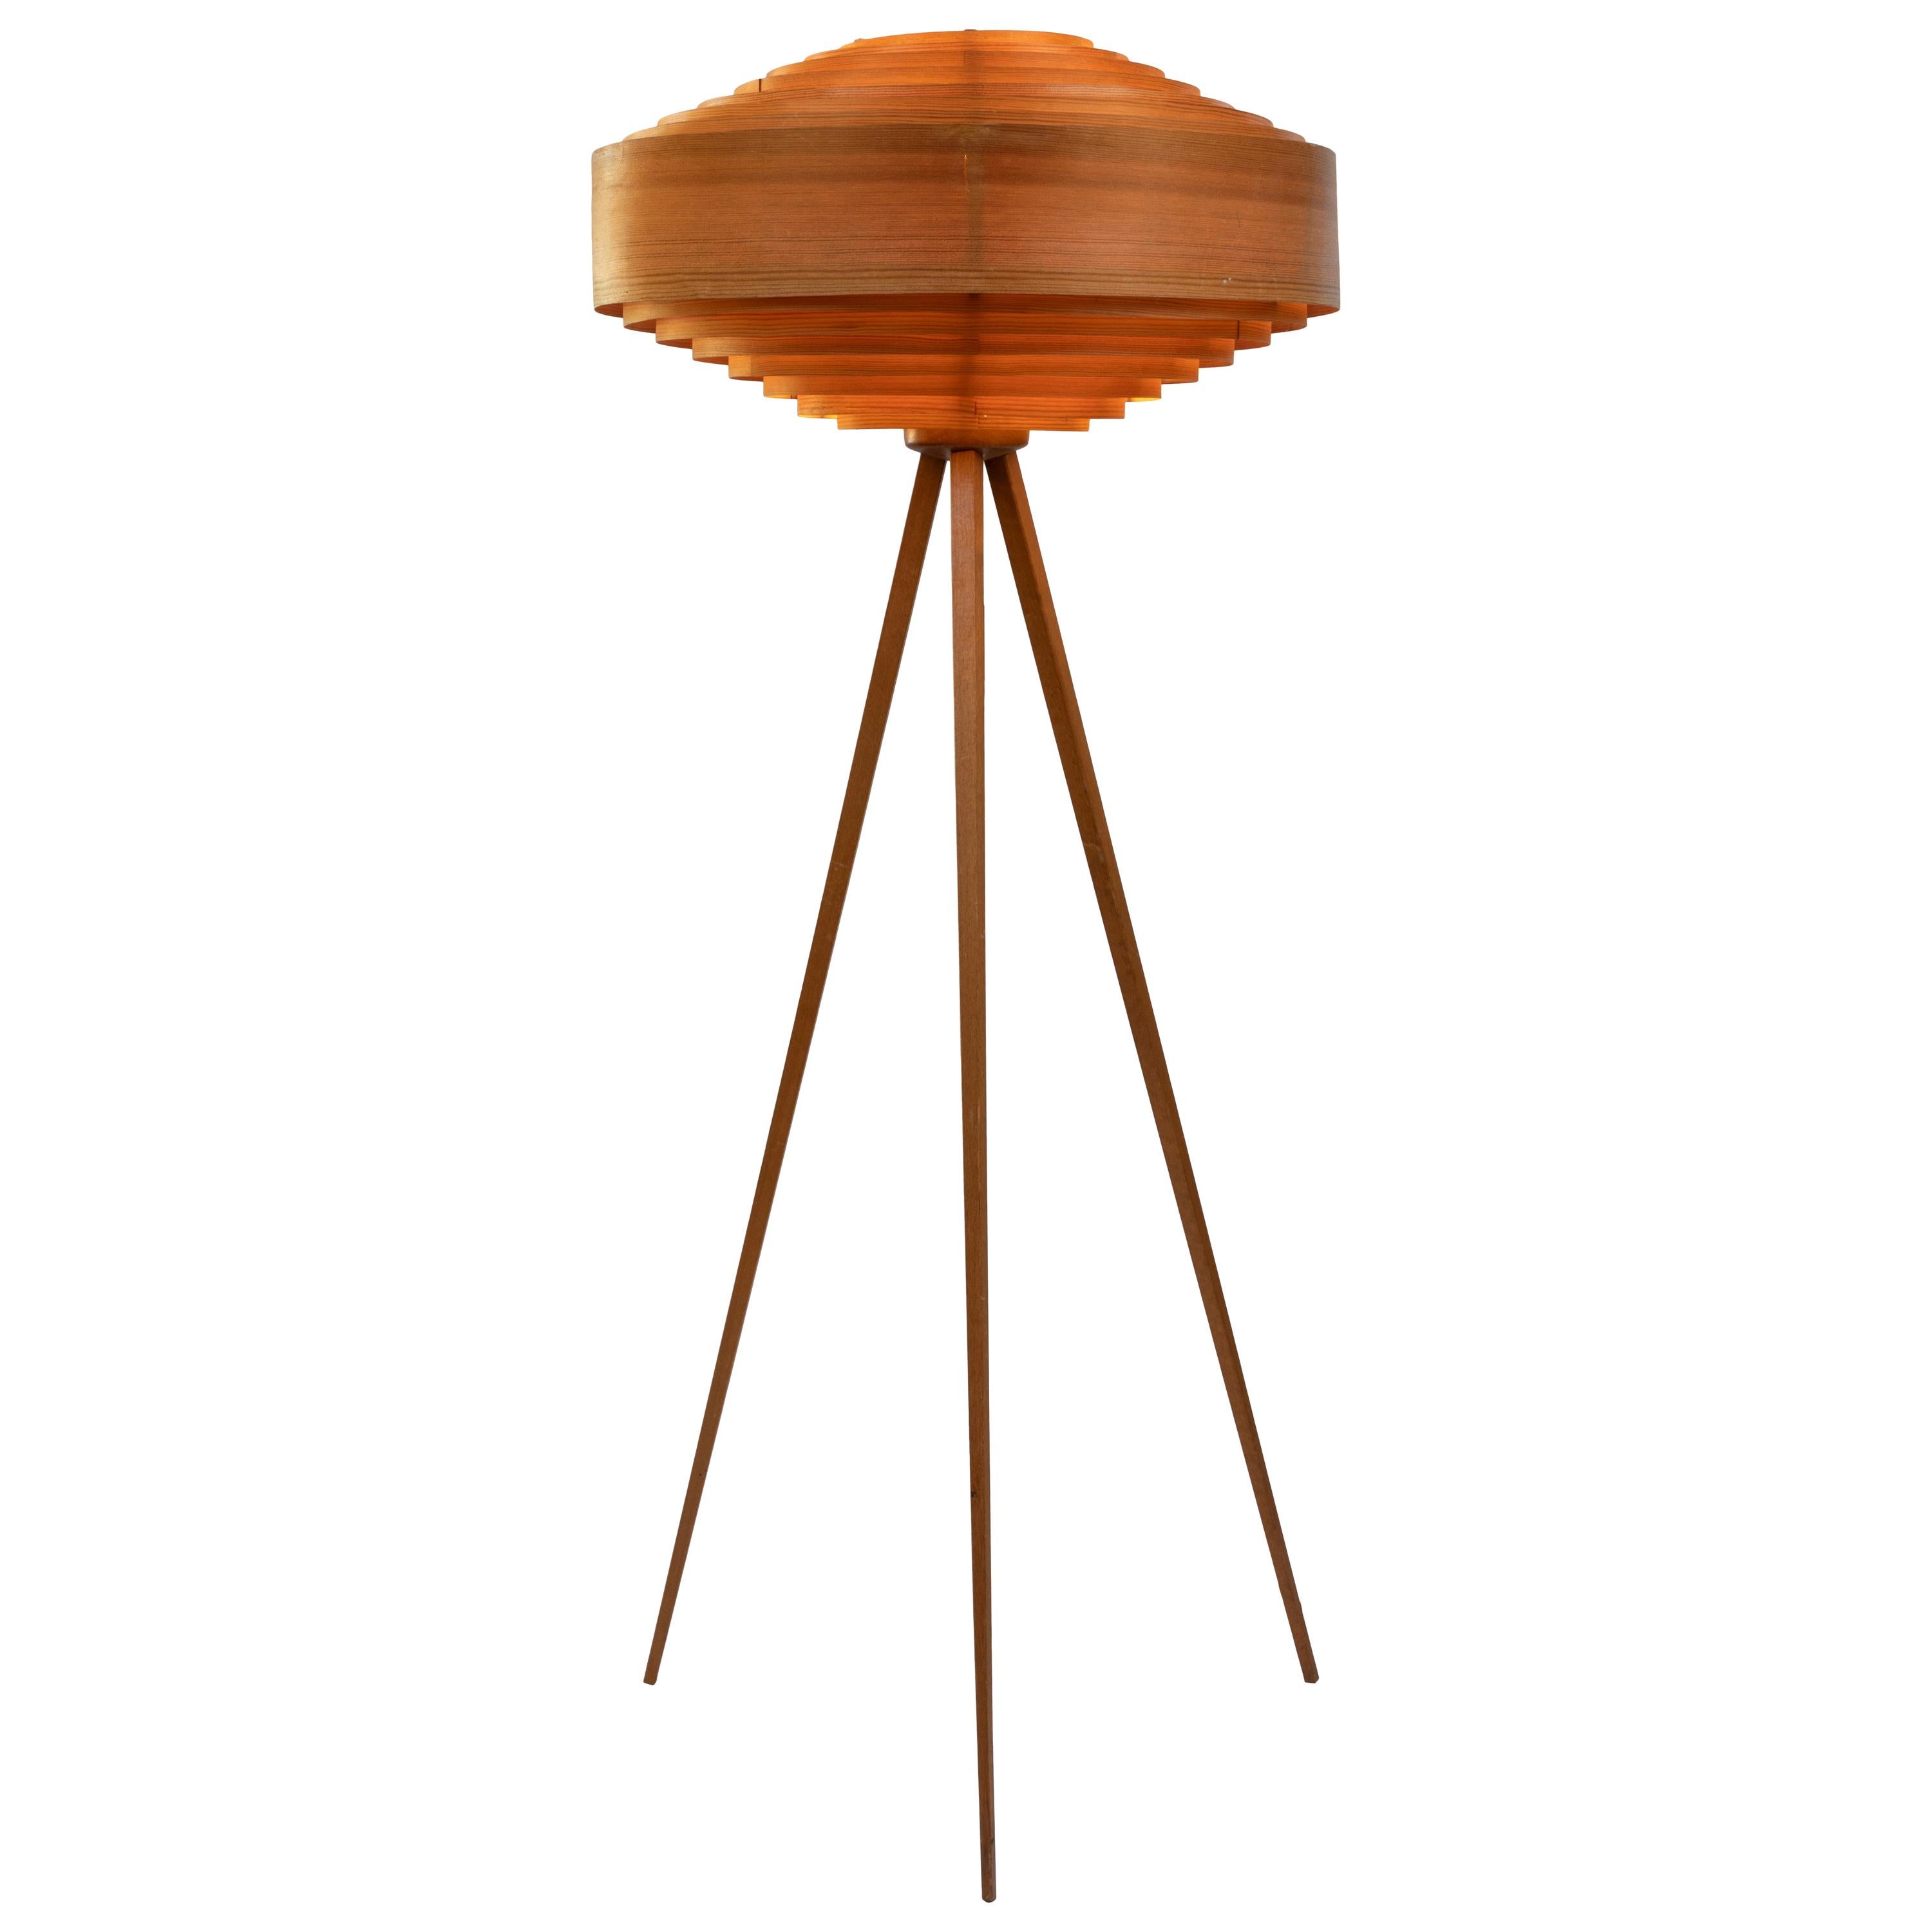 1960s Hans-Agne Jakobsson Wood Tripod Floor Lamp for AB Ellysett